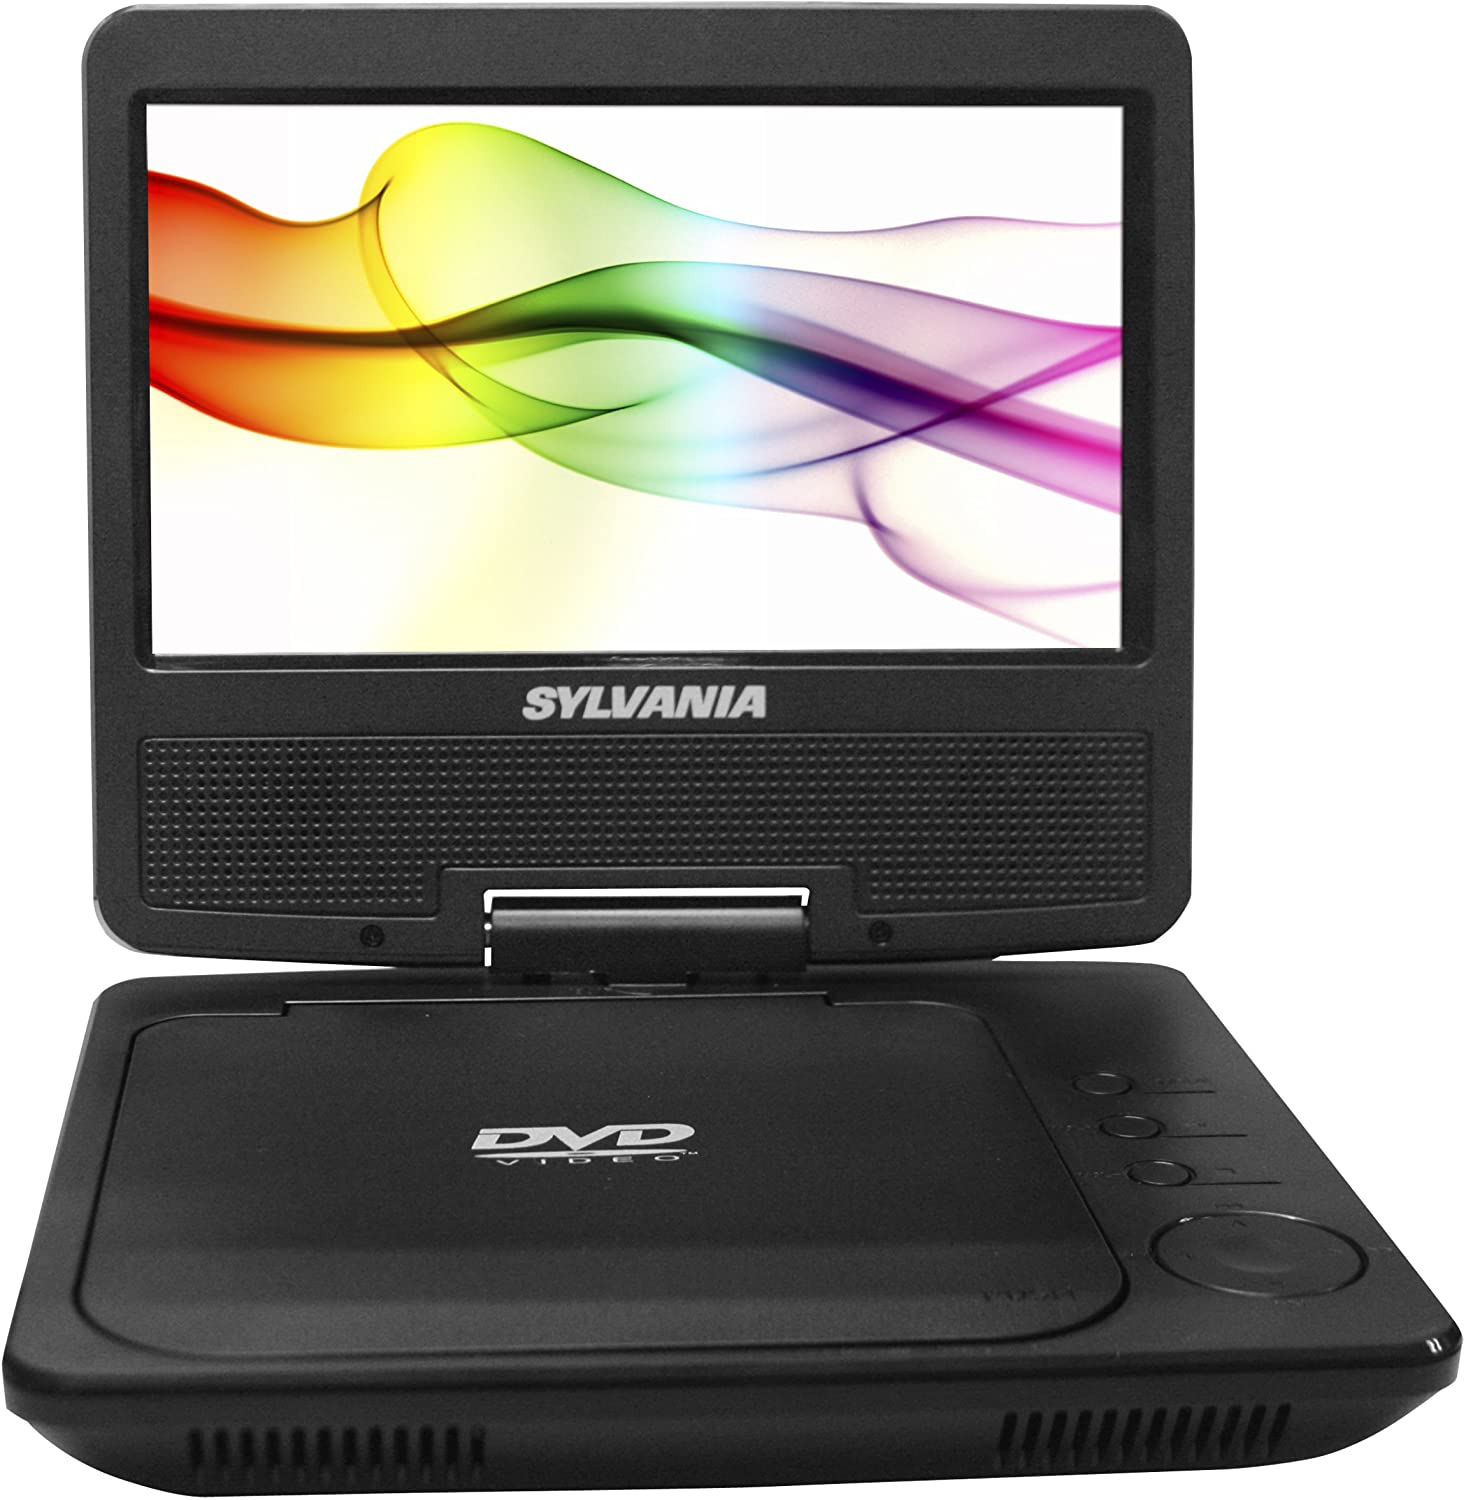 Sylvania 7" Portable DVD Player